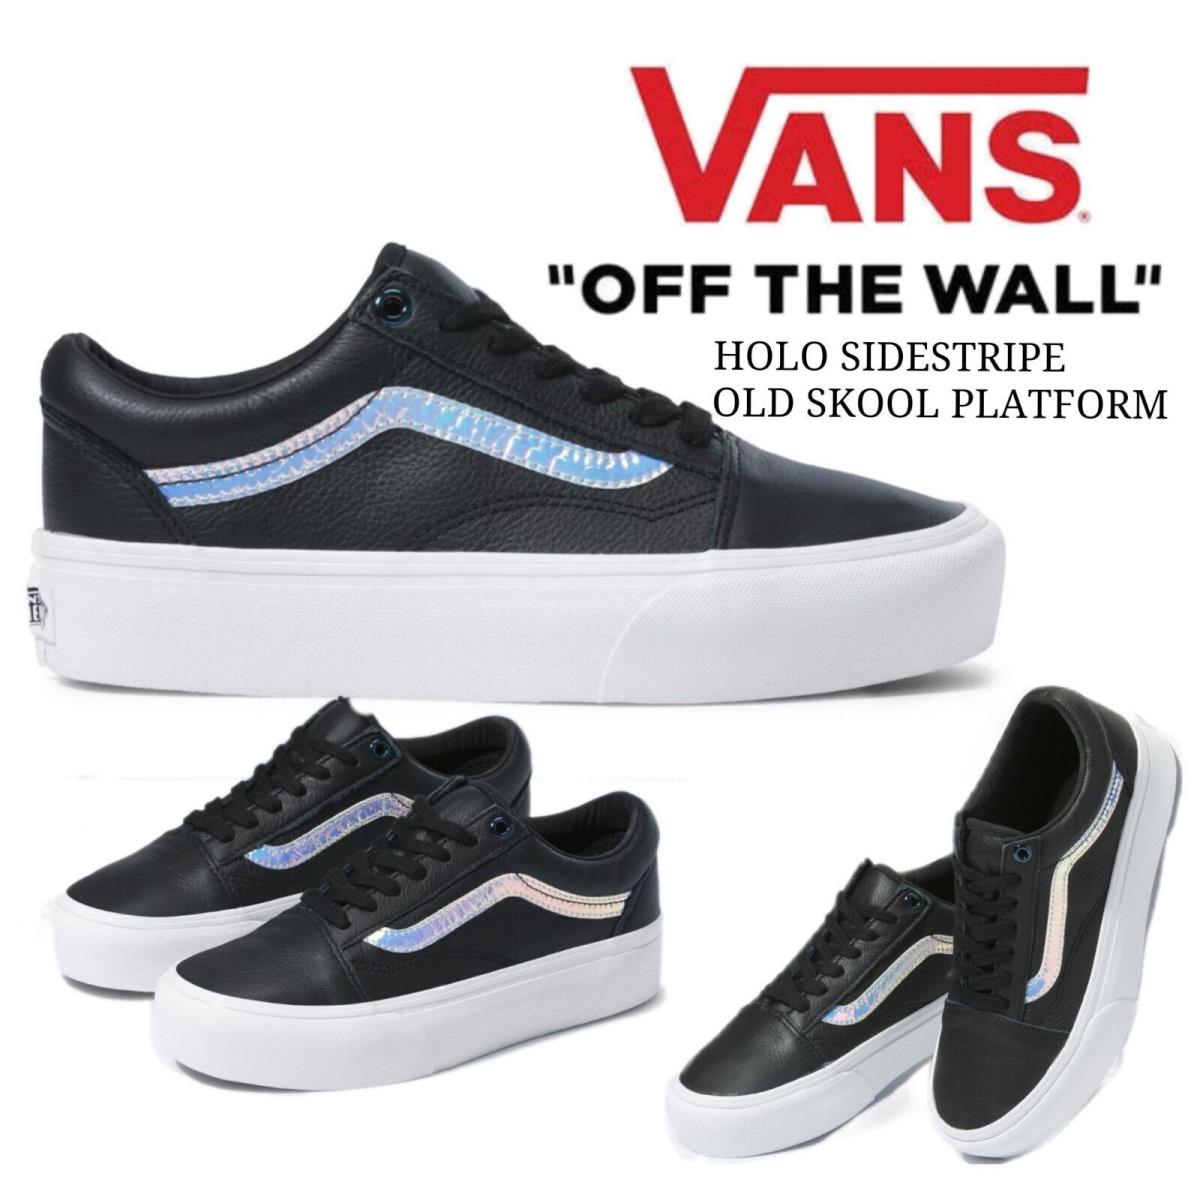 Vans Holo Sidestripe Old Skool Platform Shoes Women 7.5 / Men 6